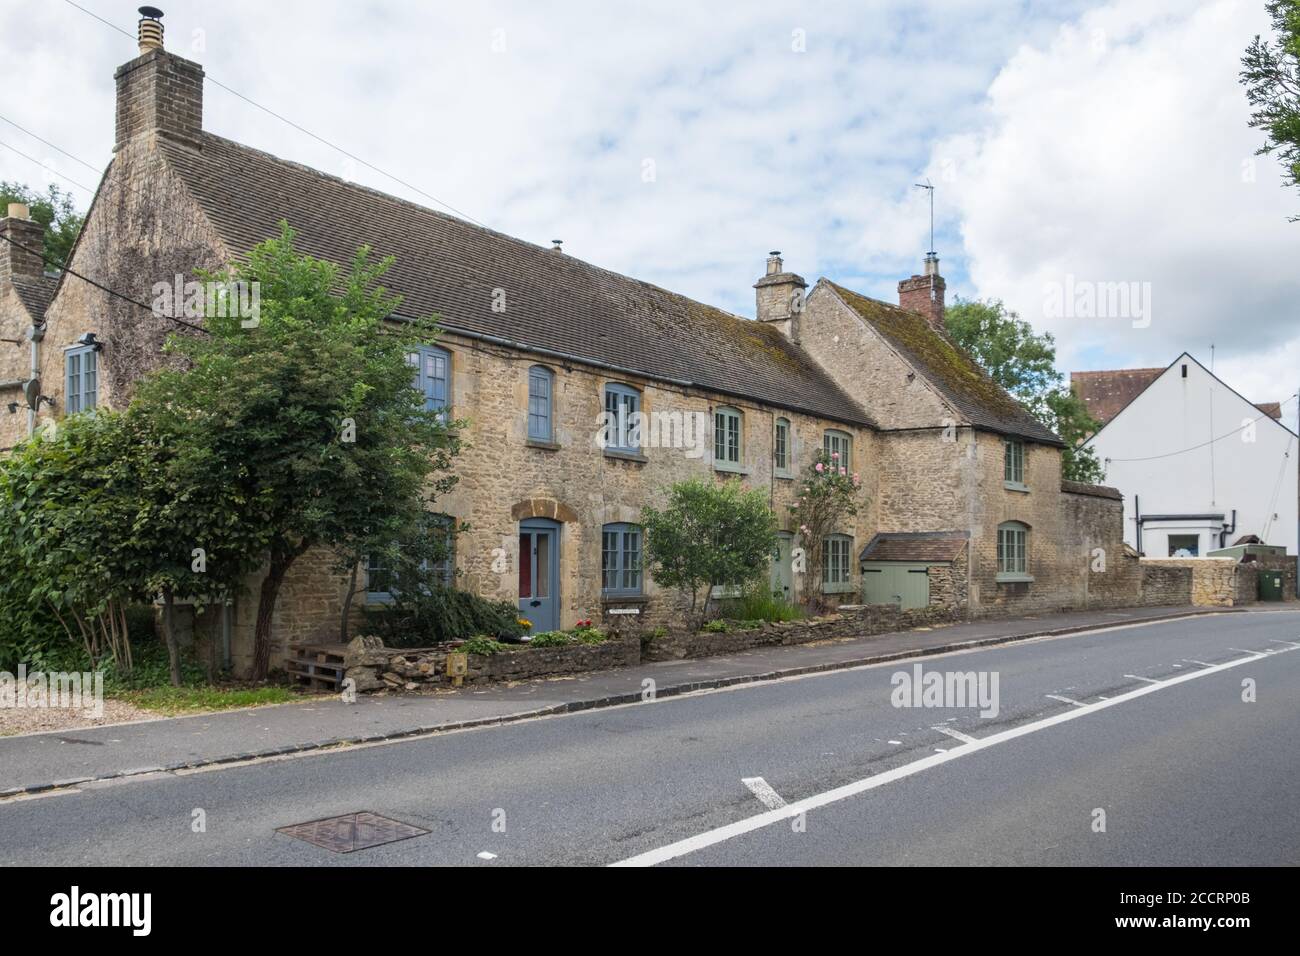 Jolies cottages en pierre dans le village de Cotswold Enstone, Oxfordshire, Royaume-Uni Banque D'Images